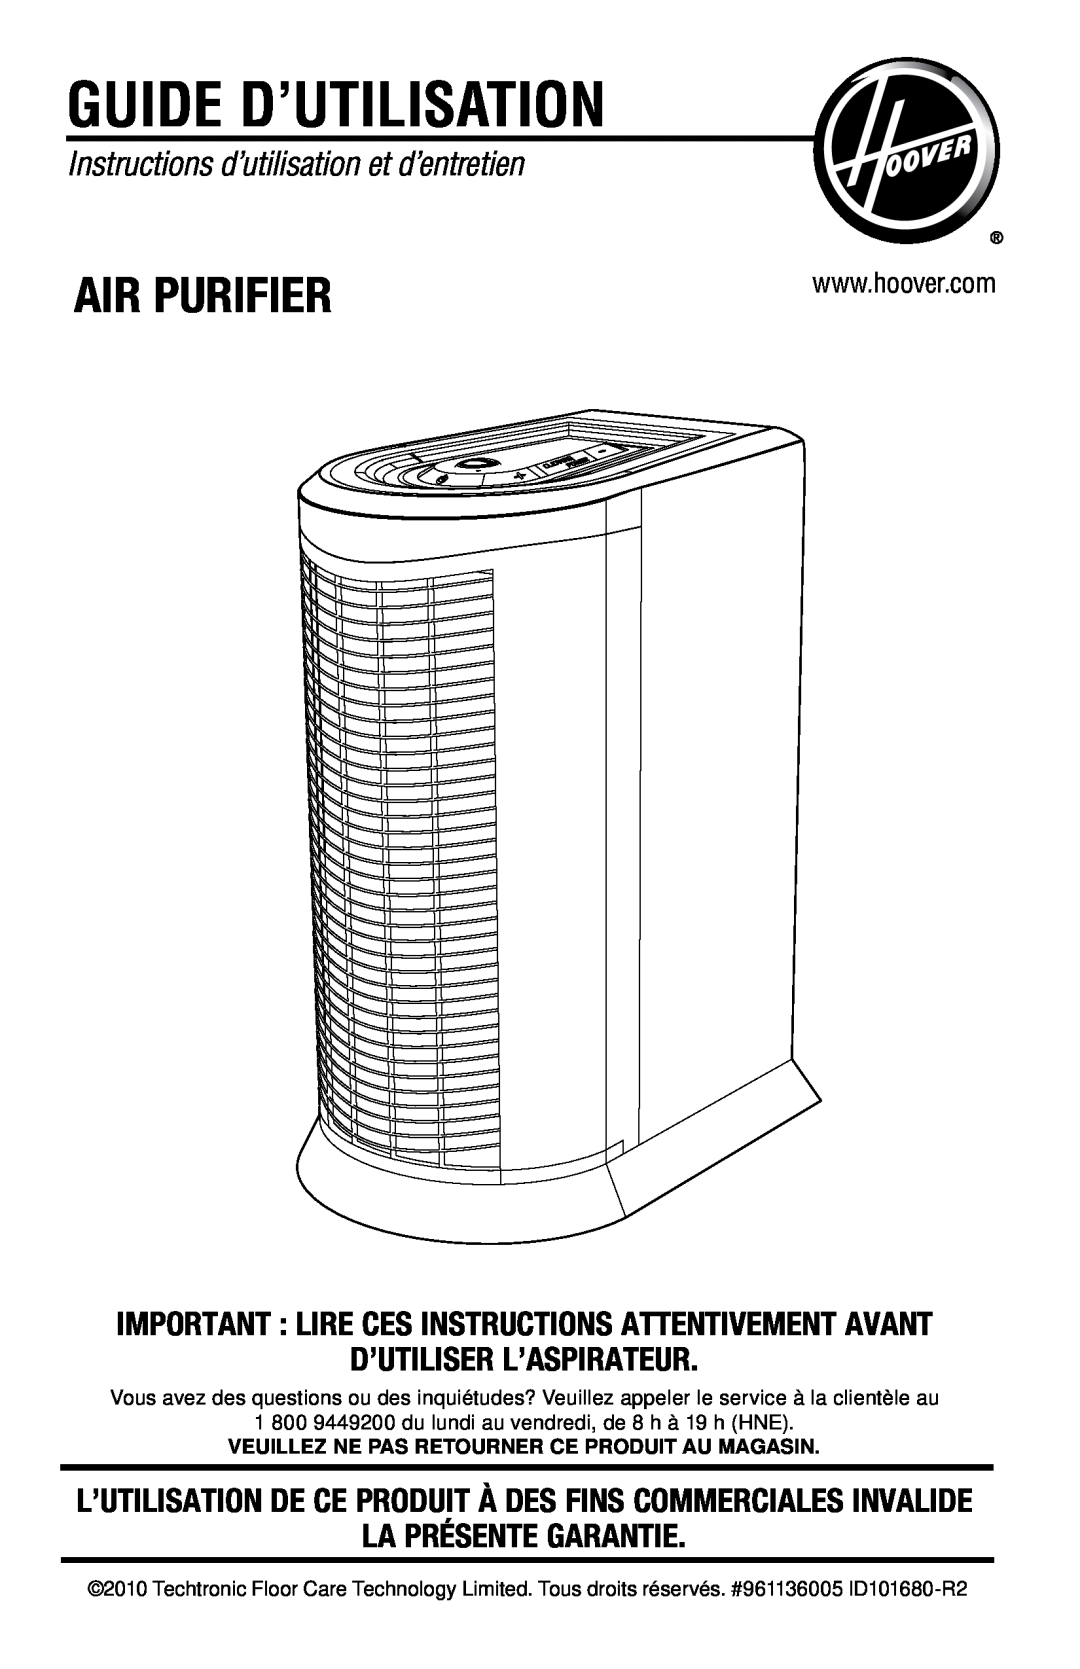 Hoover WH10100 Guide d’utilisation, Instructions d’utilisation et d’entretien, D’Utiliser L’Aspirateur, Air Purifier 